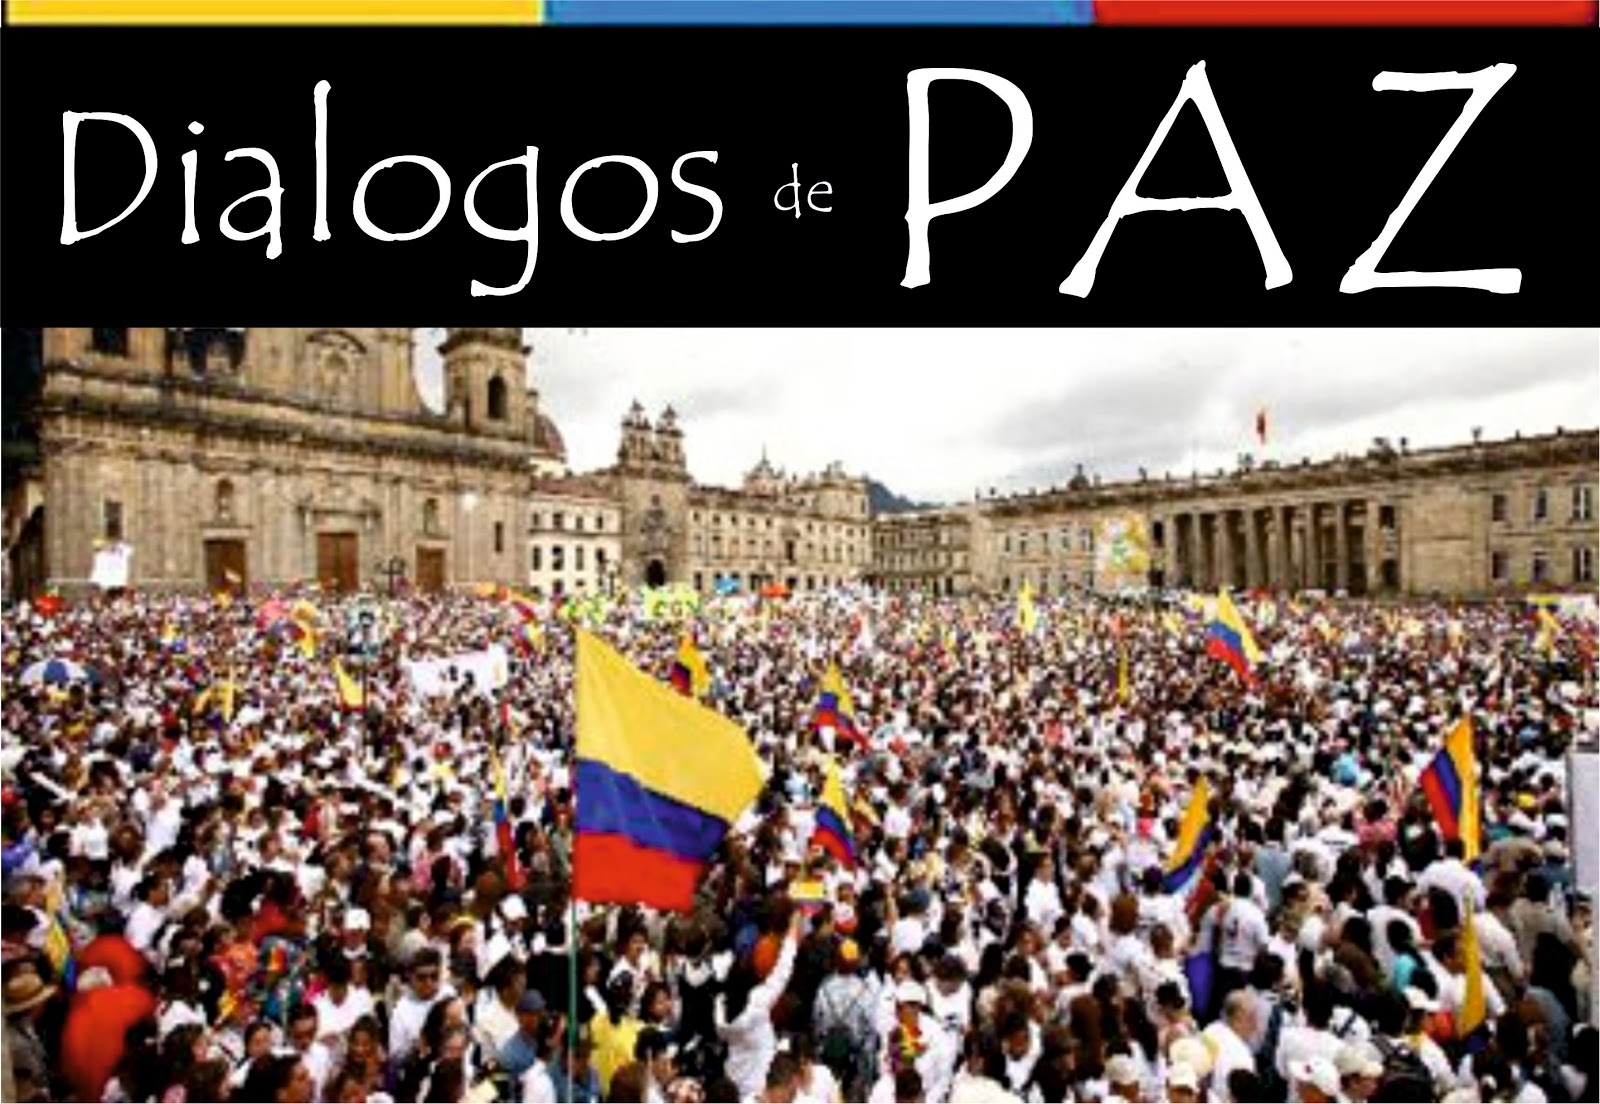 nieuws uit colombia